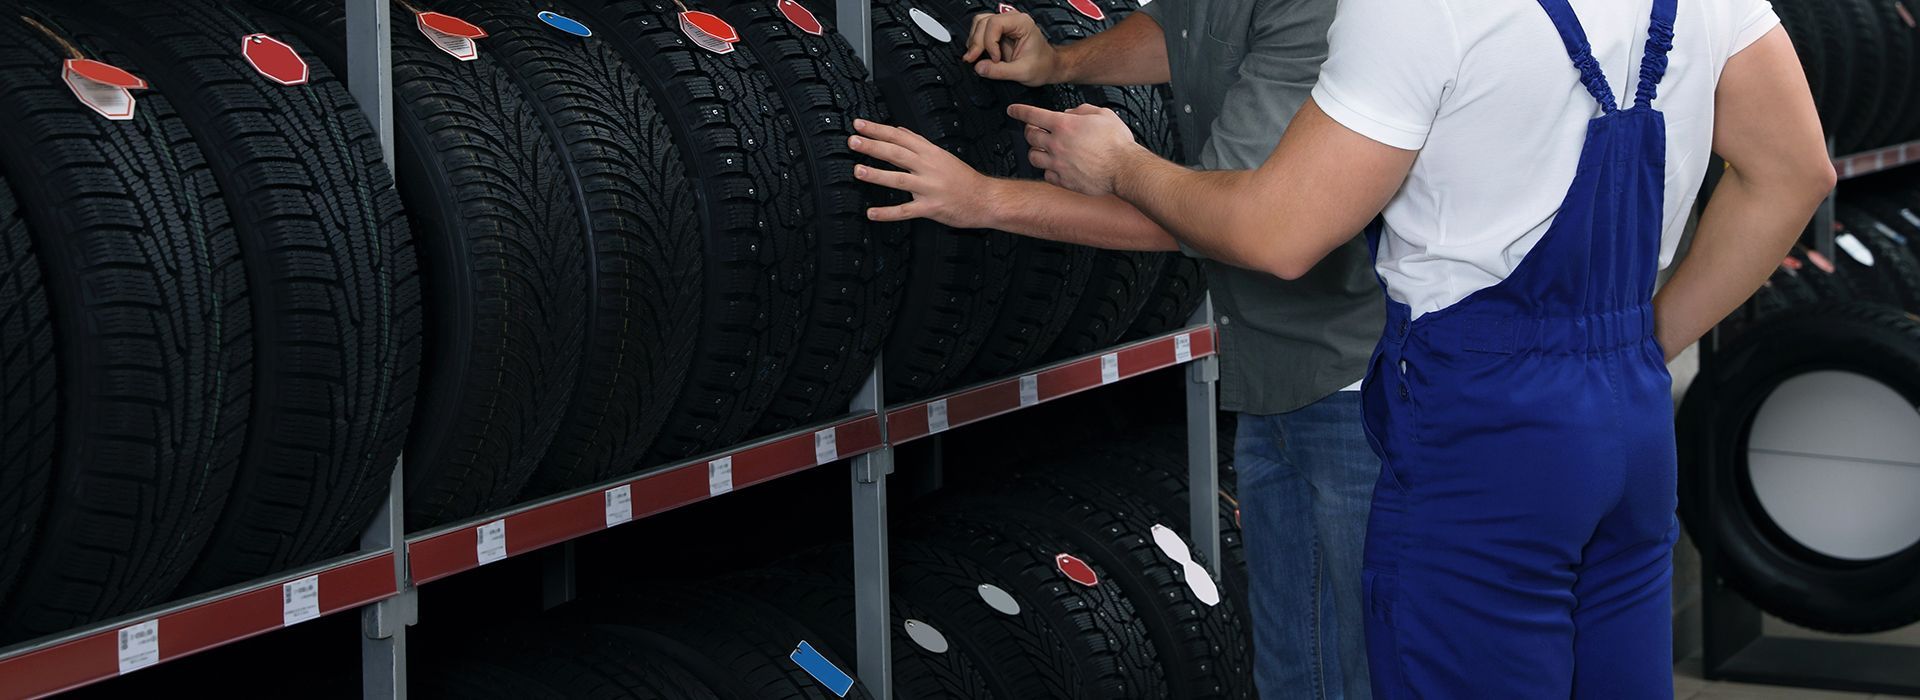 Les pneus 4 saisons polyvalents adaptés à toutes les routes des vacances